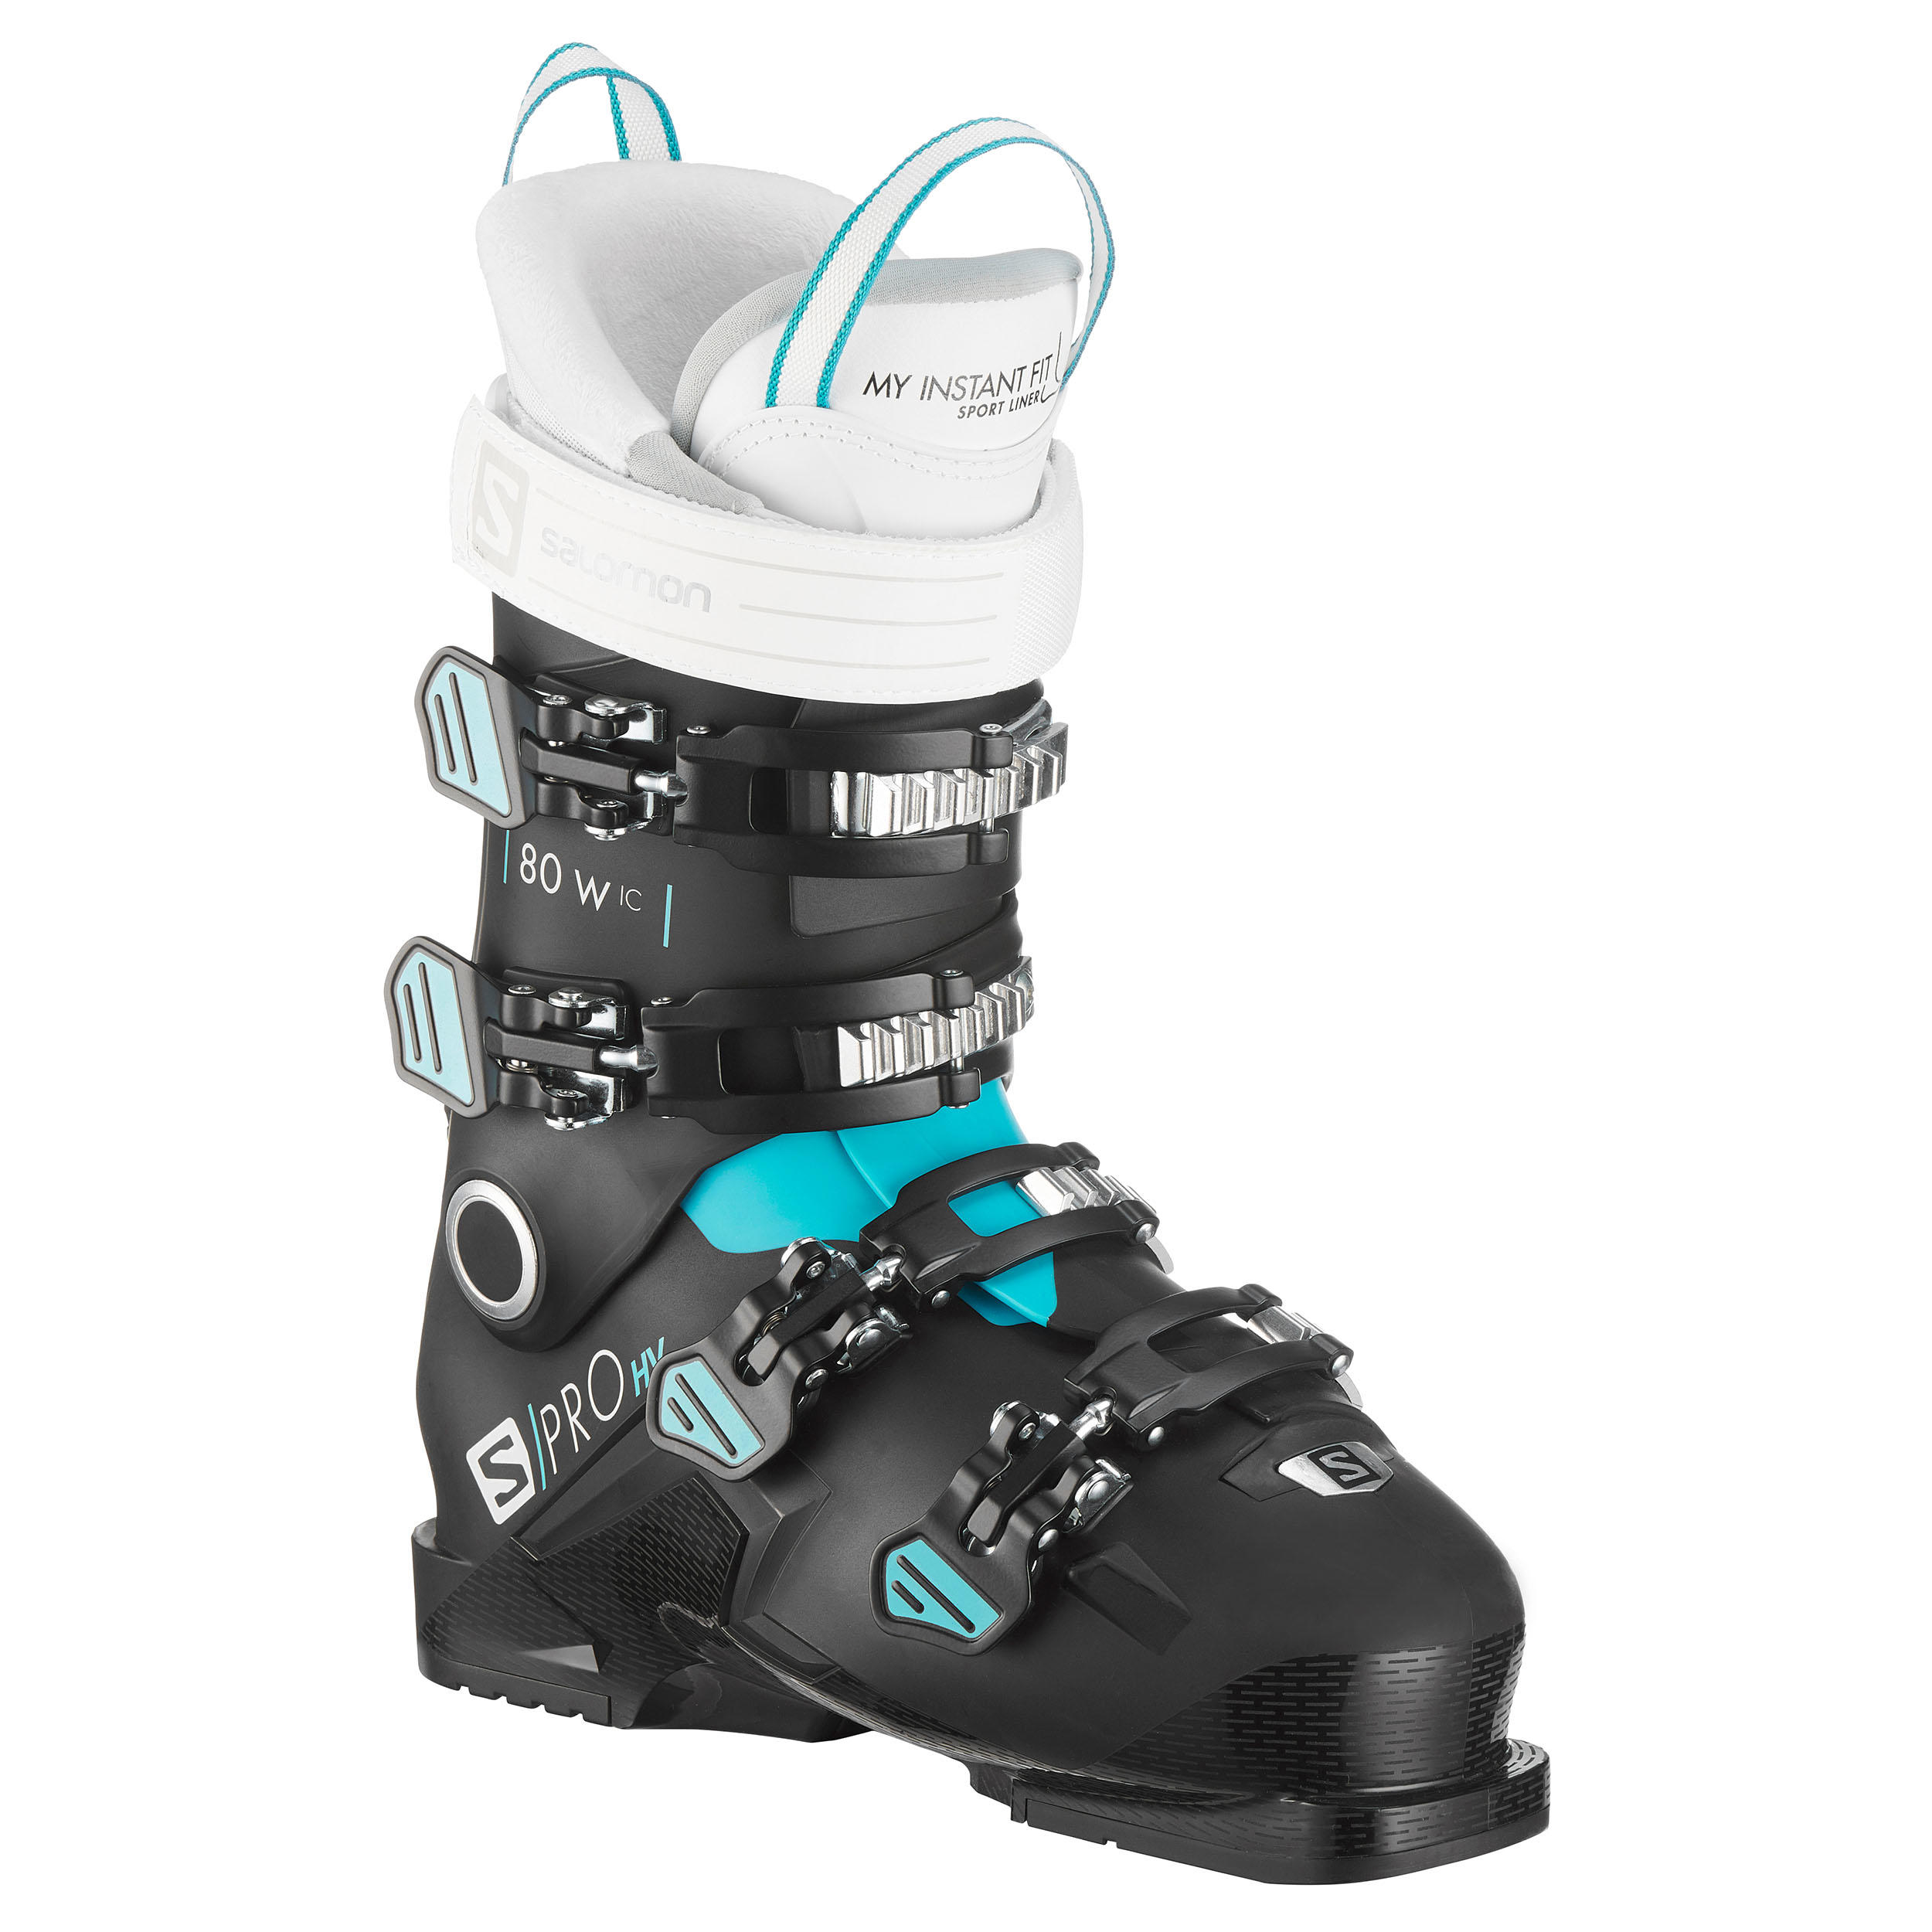 Langlauf Ski Schuhe Salomon 36 Damen Schuhe Sonstiges Salomon Sonstiges 